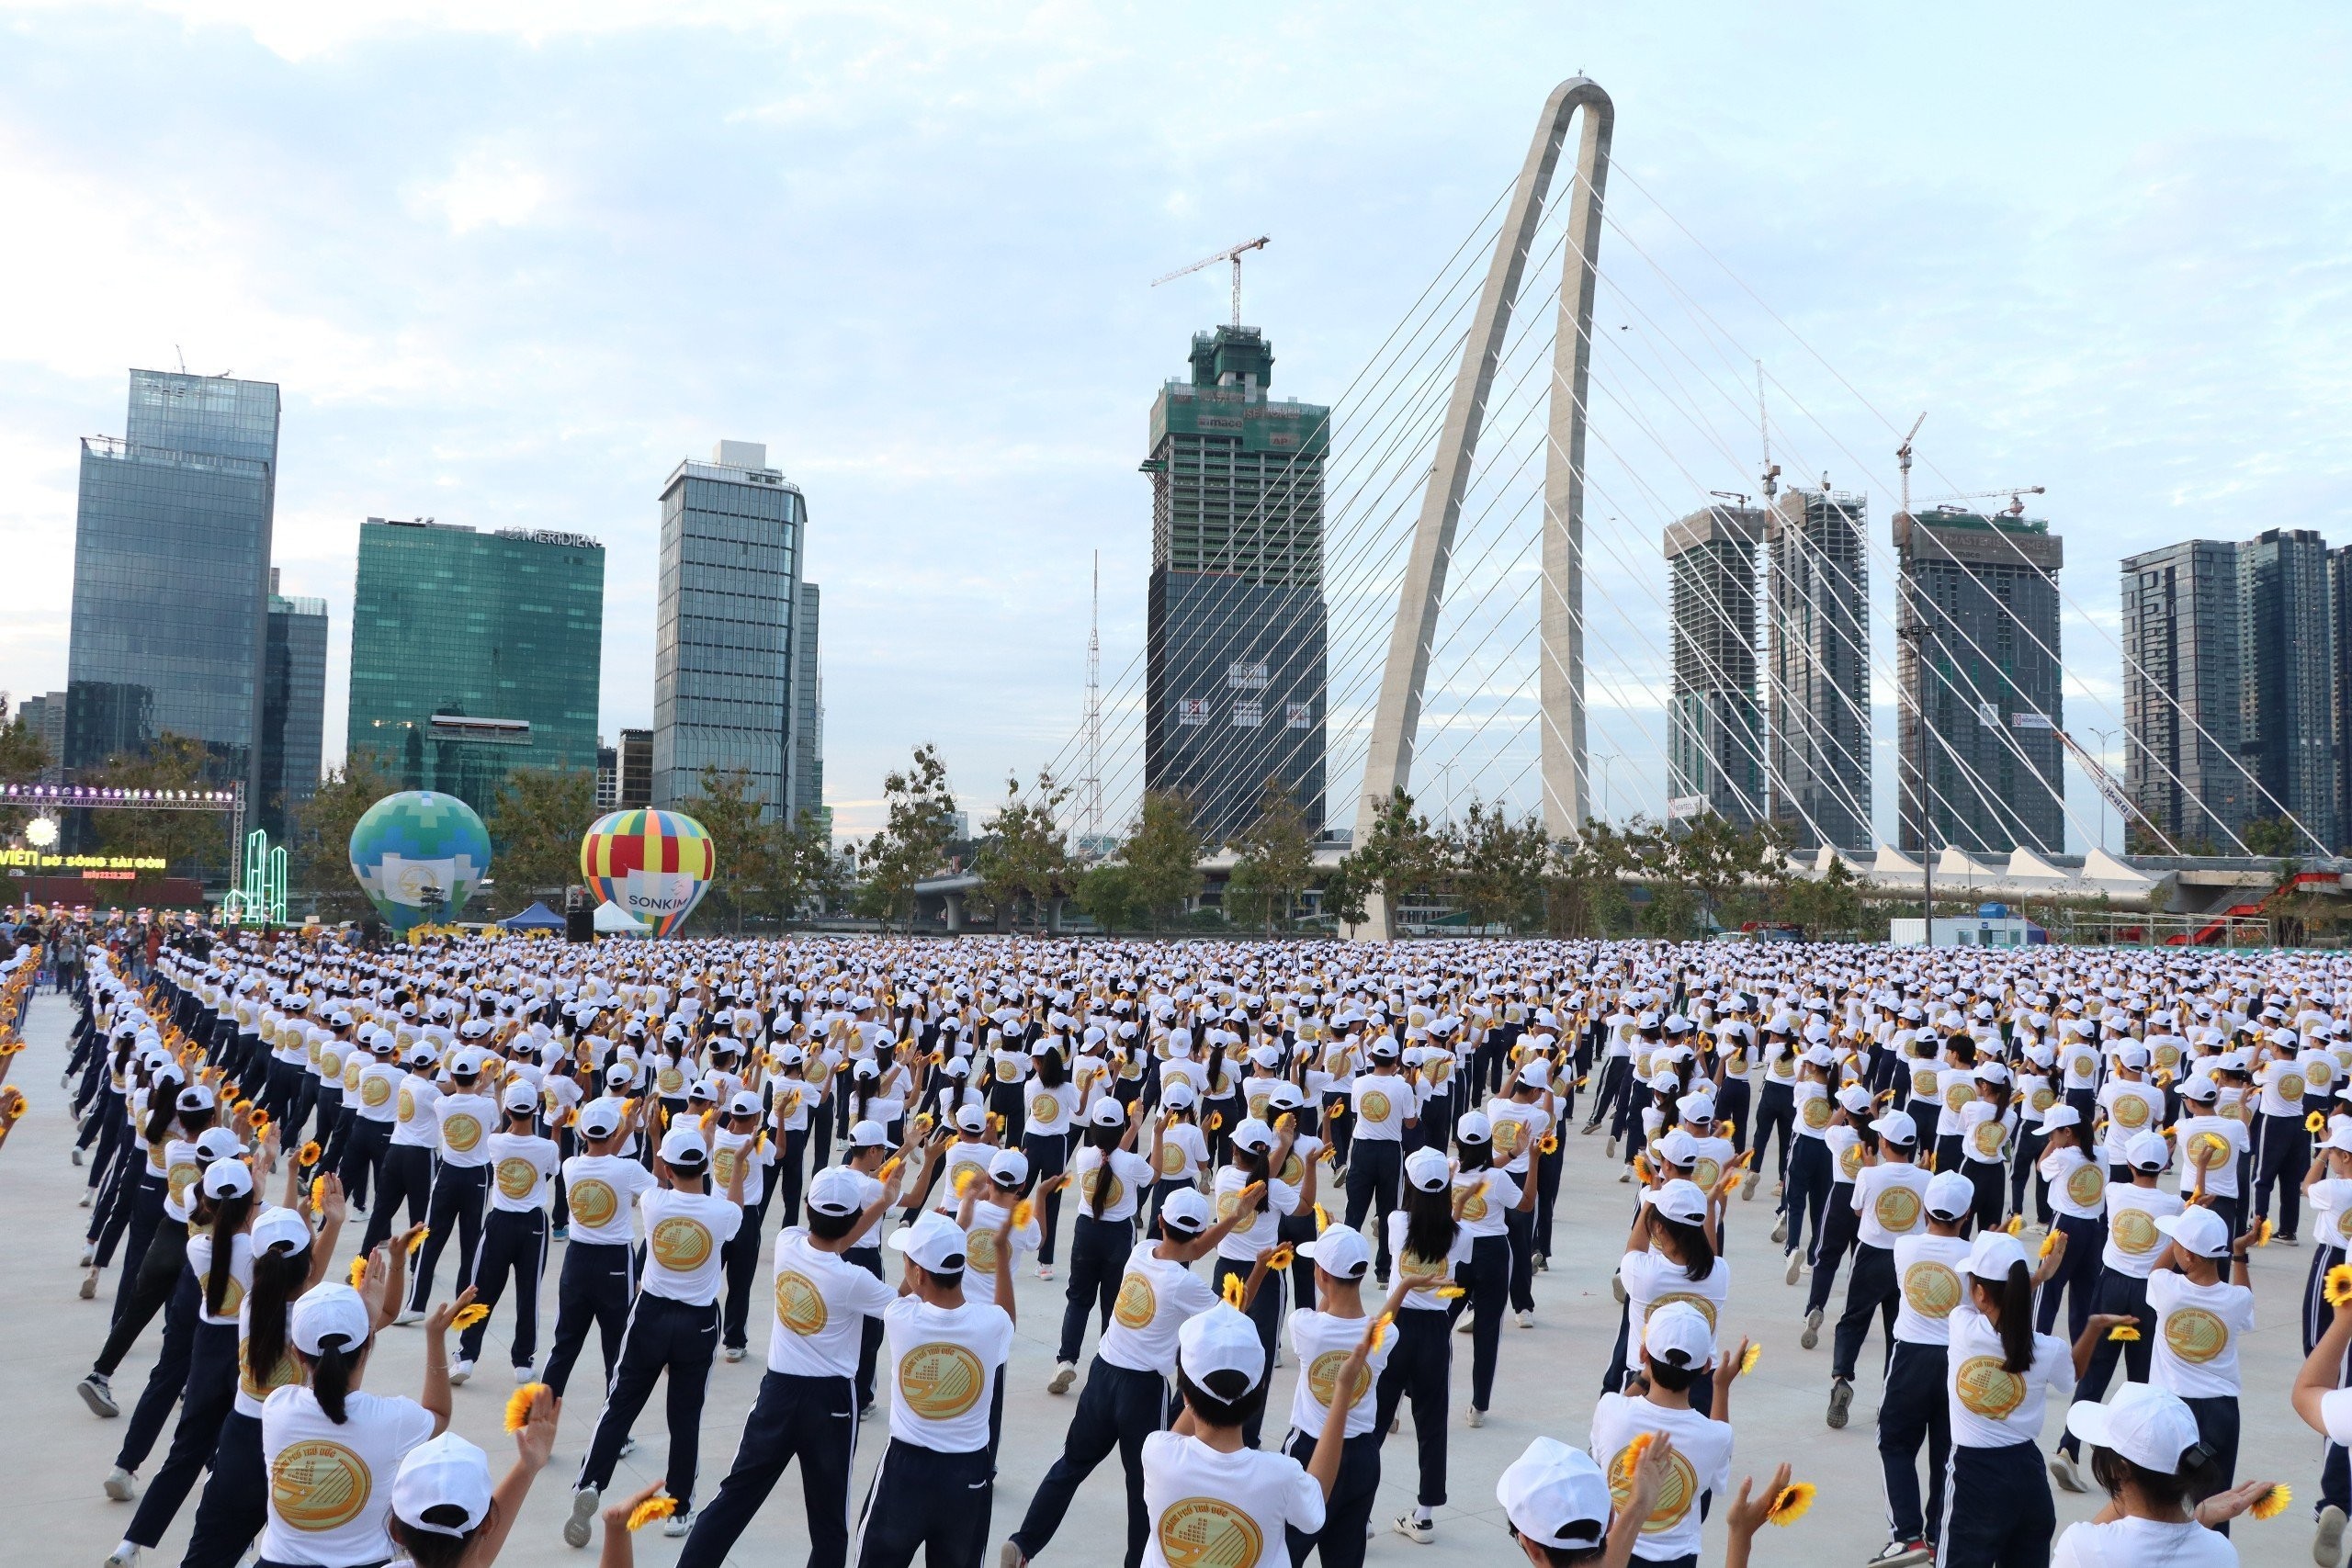 Lễ kỷ niệm 3 năm ngày thành lập thành phố Thủ Đức sẽ diễn ra tại công viên bờ sông Sài Gòn